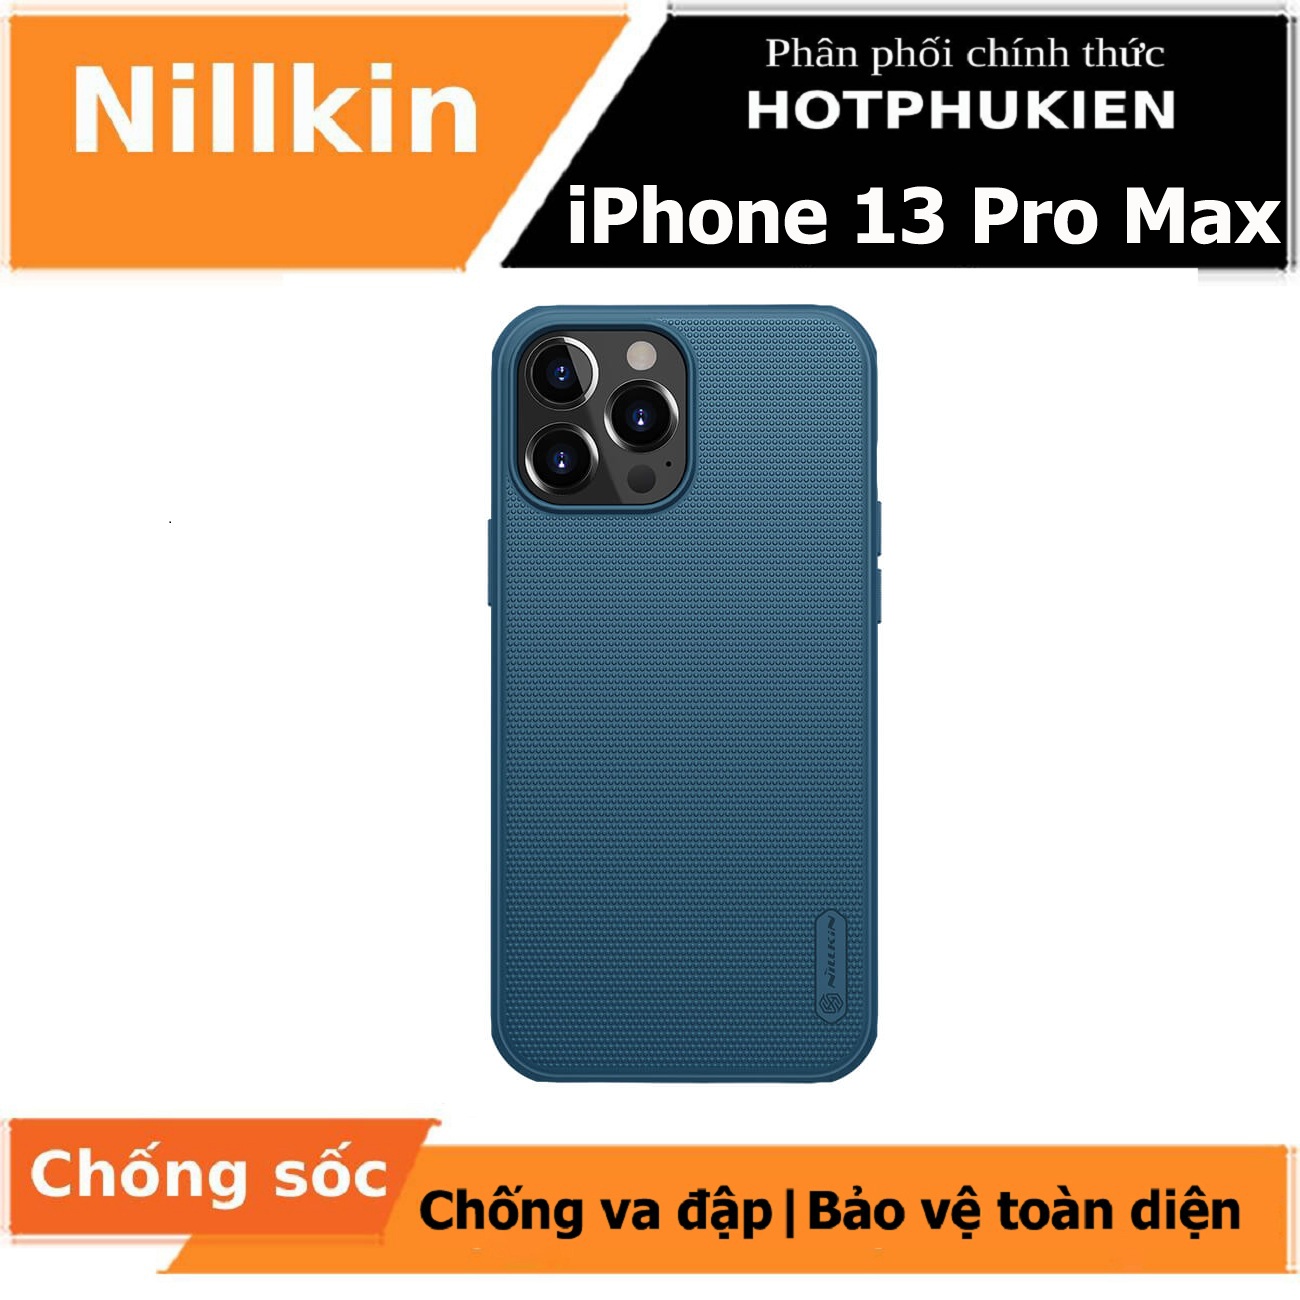 Ốp lưng chống sốc cho iPhone 13 Pro Max mặt lưng nhám sần hiệu Nillkin Super Frosted Shield Pro